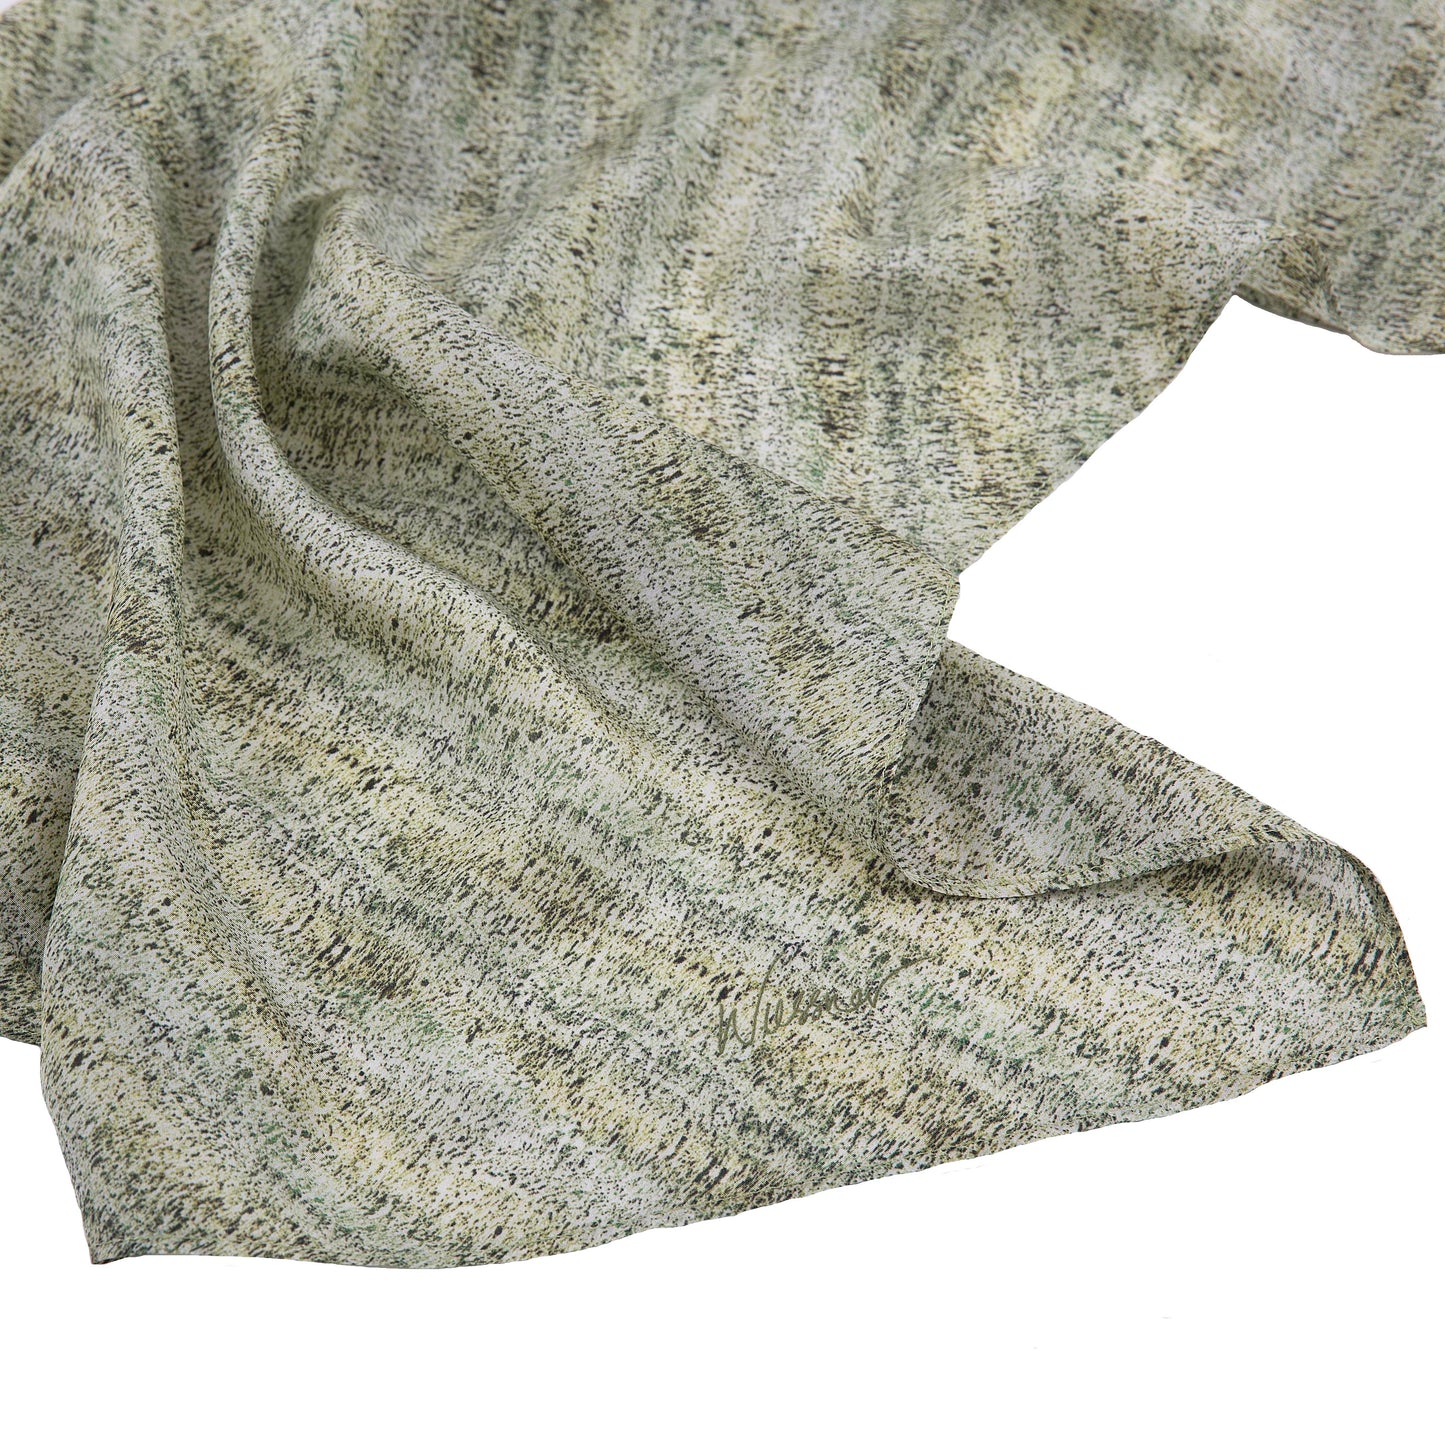 DANIELLE WIESSNER printed silk scarf